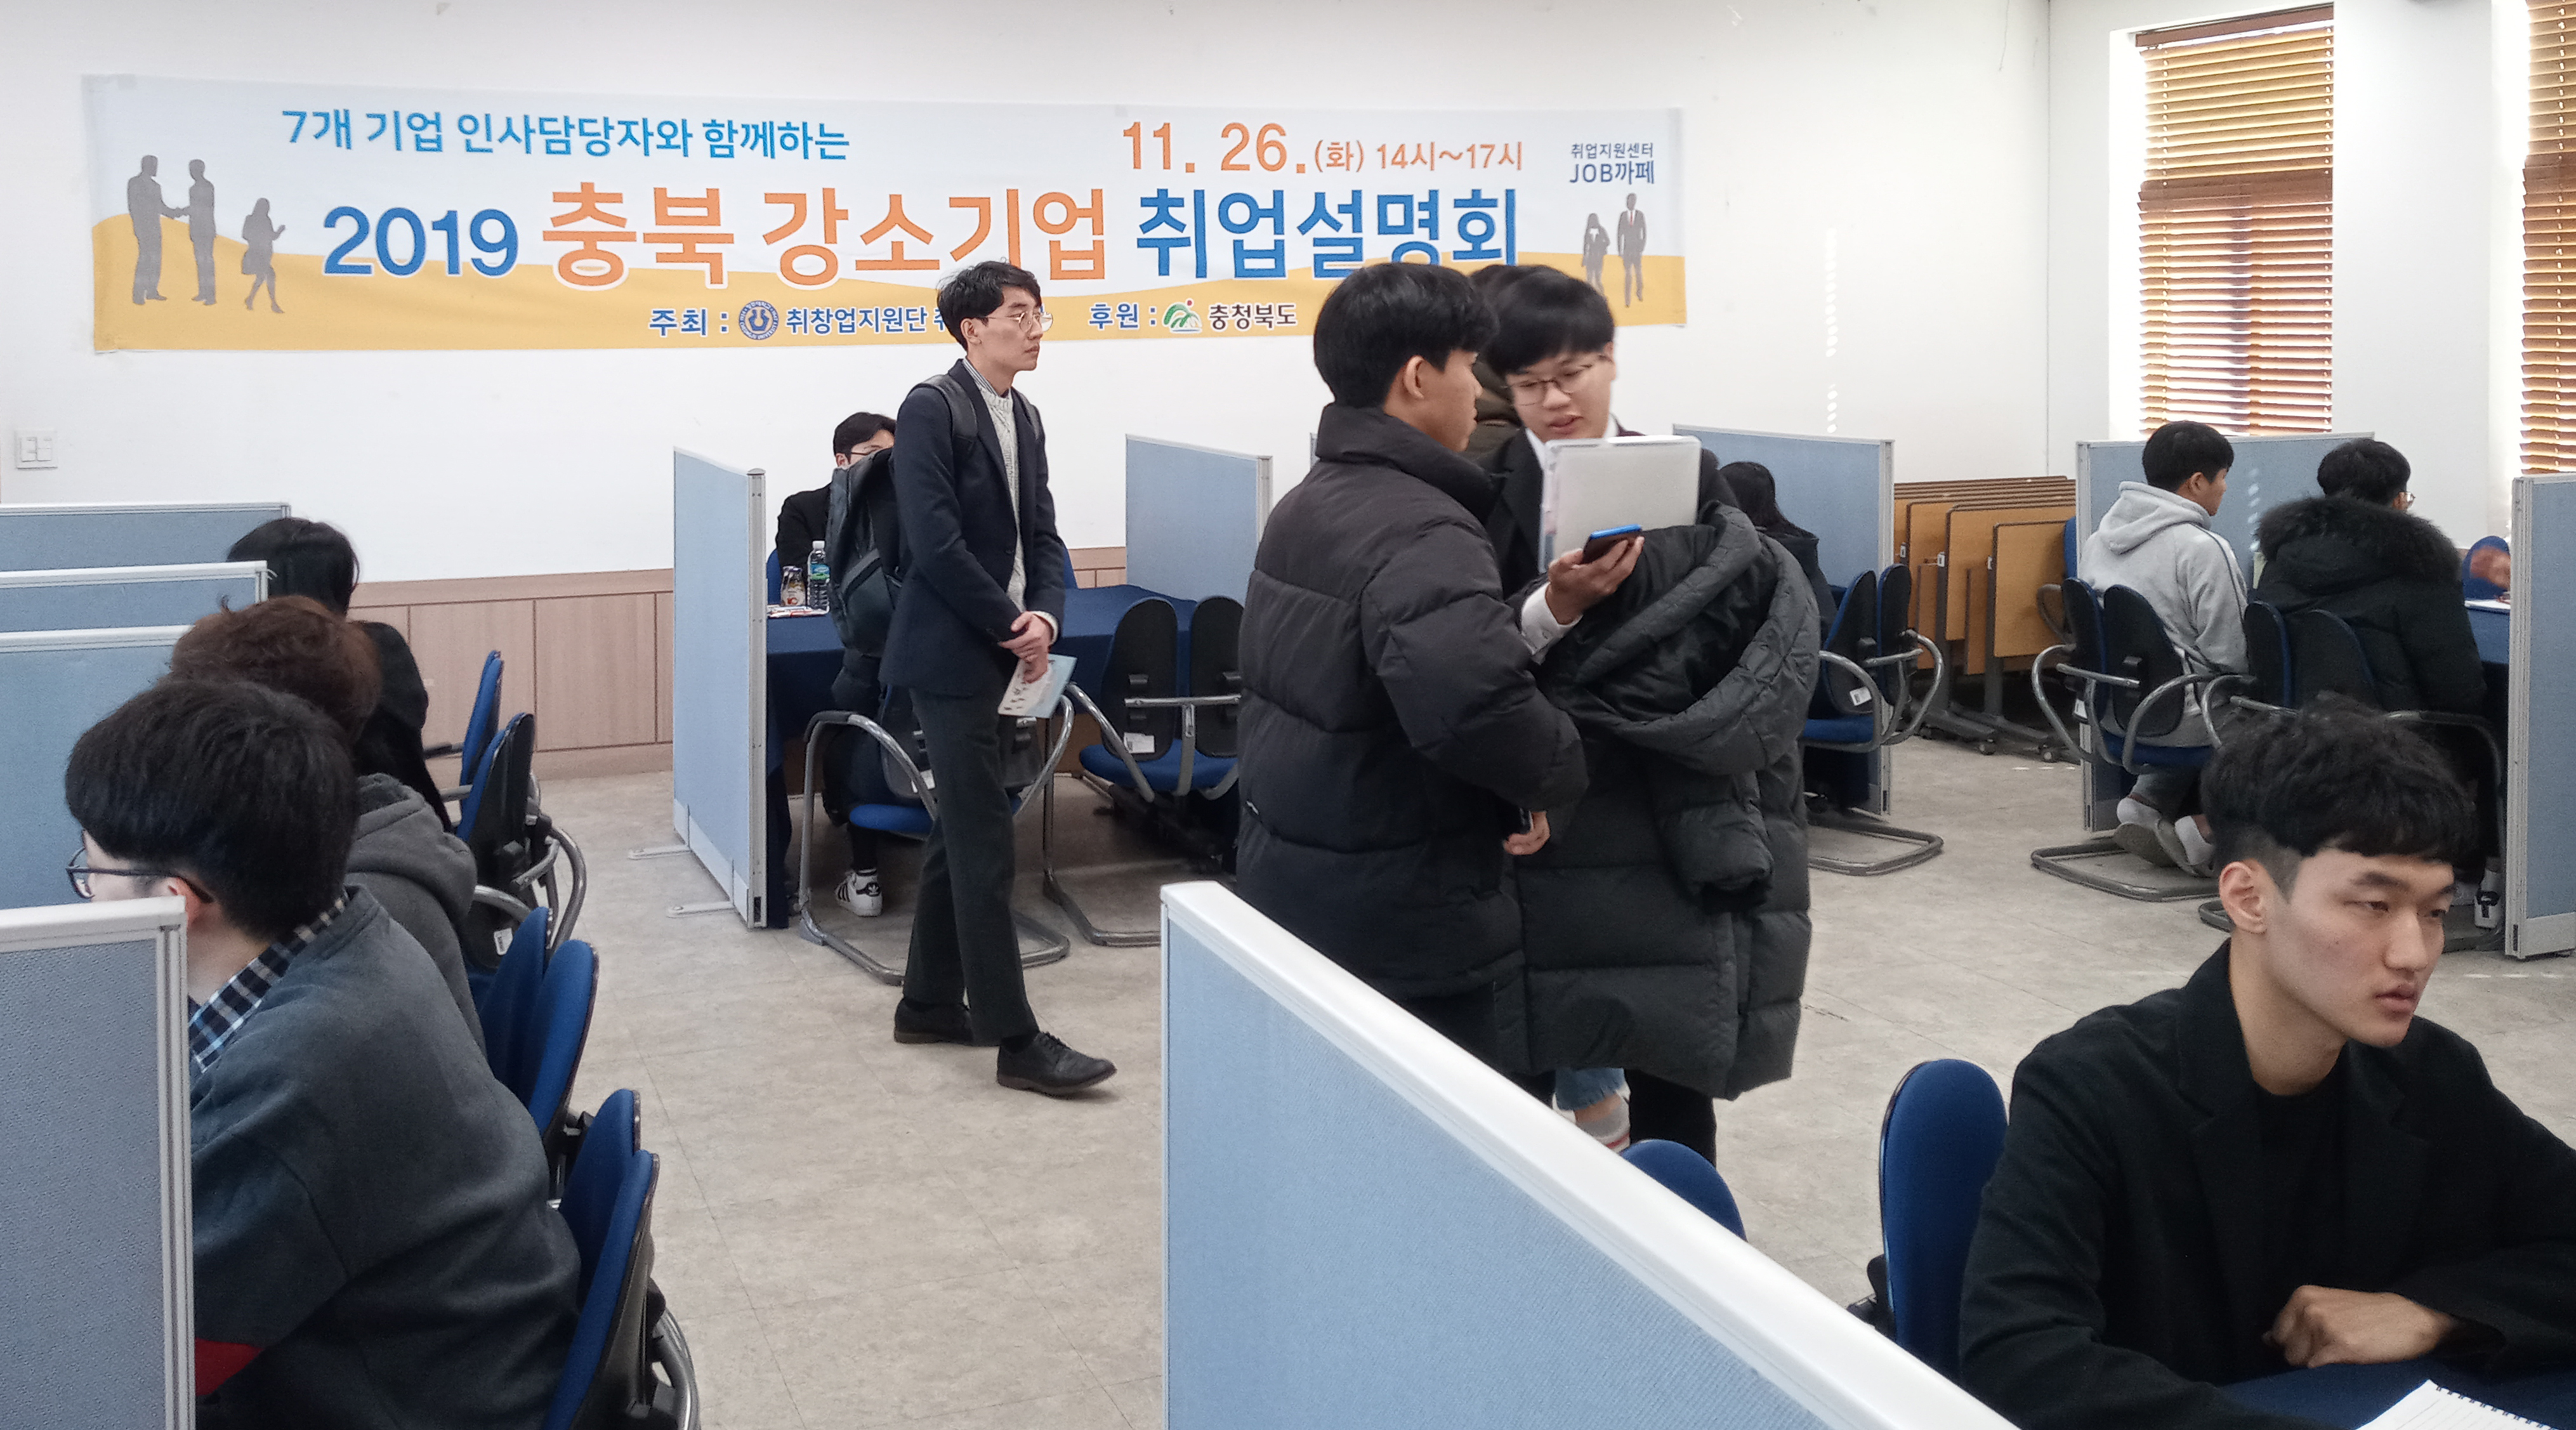 청주대학교(총장 차천수)는 ‘충북 강소기업 취업 설명회’를 입학취업지원관 잡카페에서 개최했다.